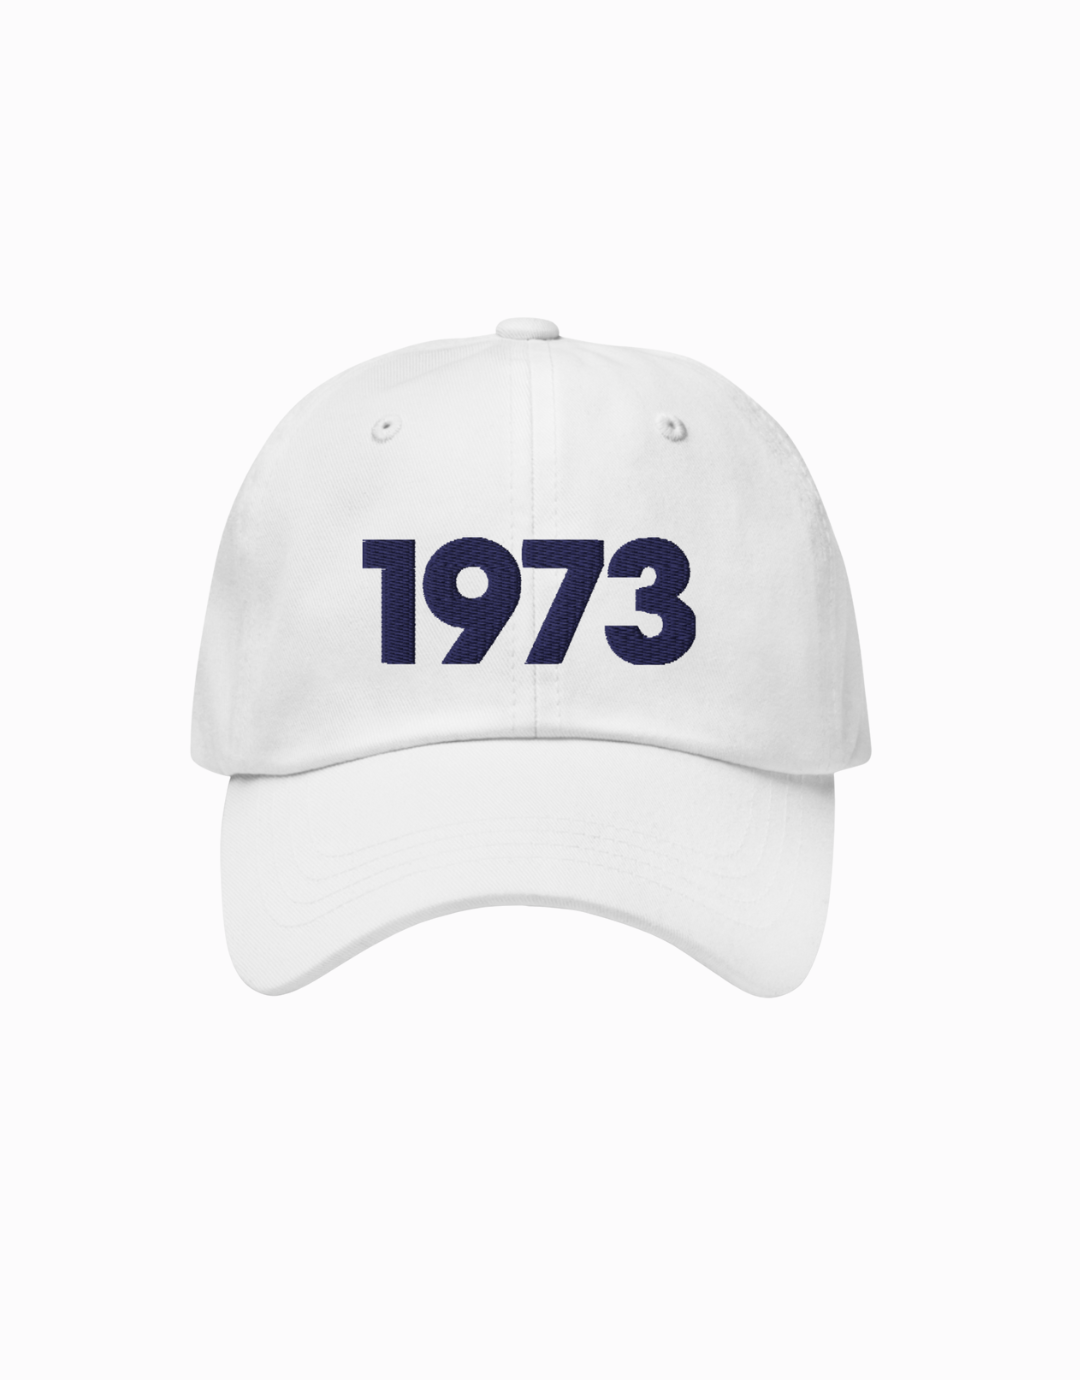 1973 Hat - White/Navy